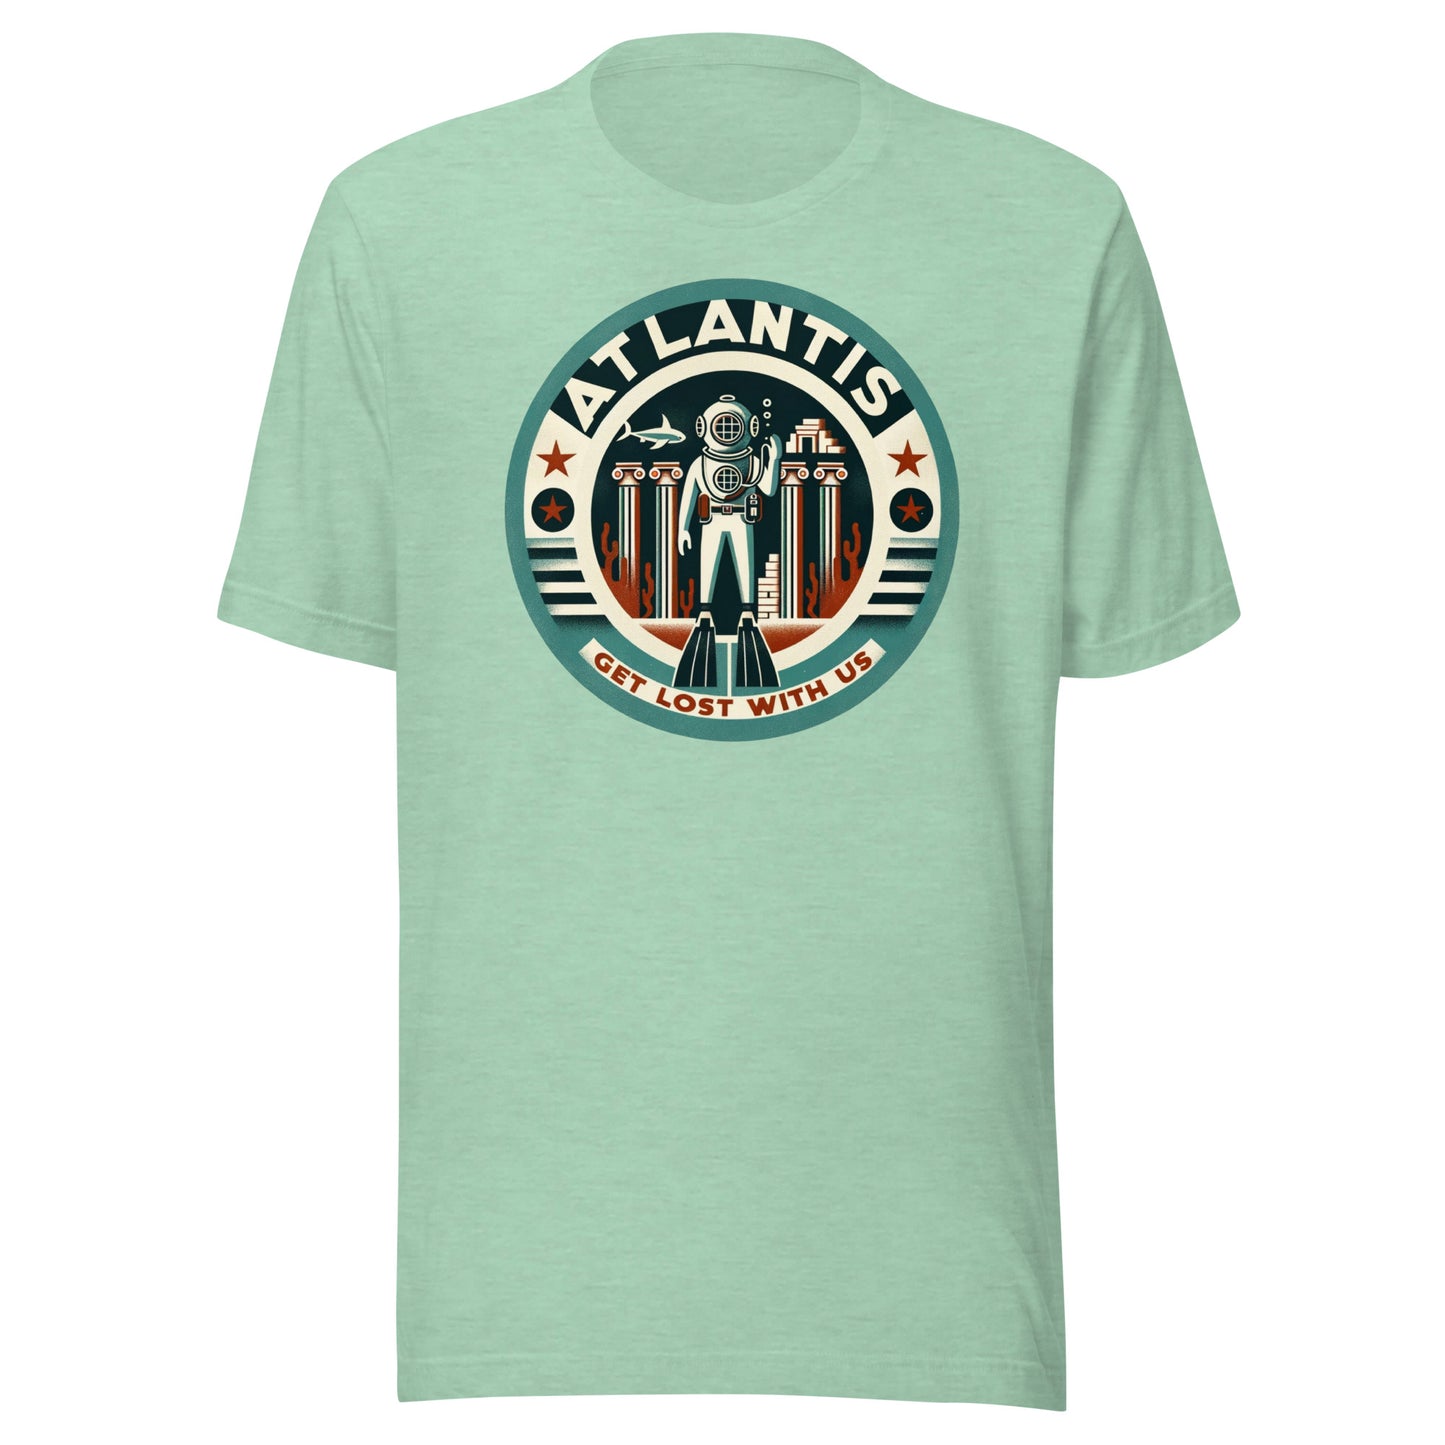 Atlantis Dive Tours - Get Lost with Us Unisex t-shirt